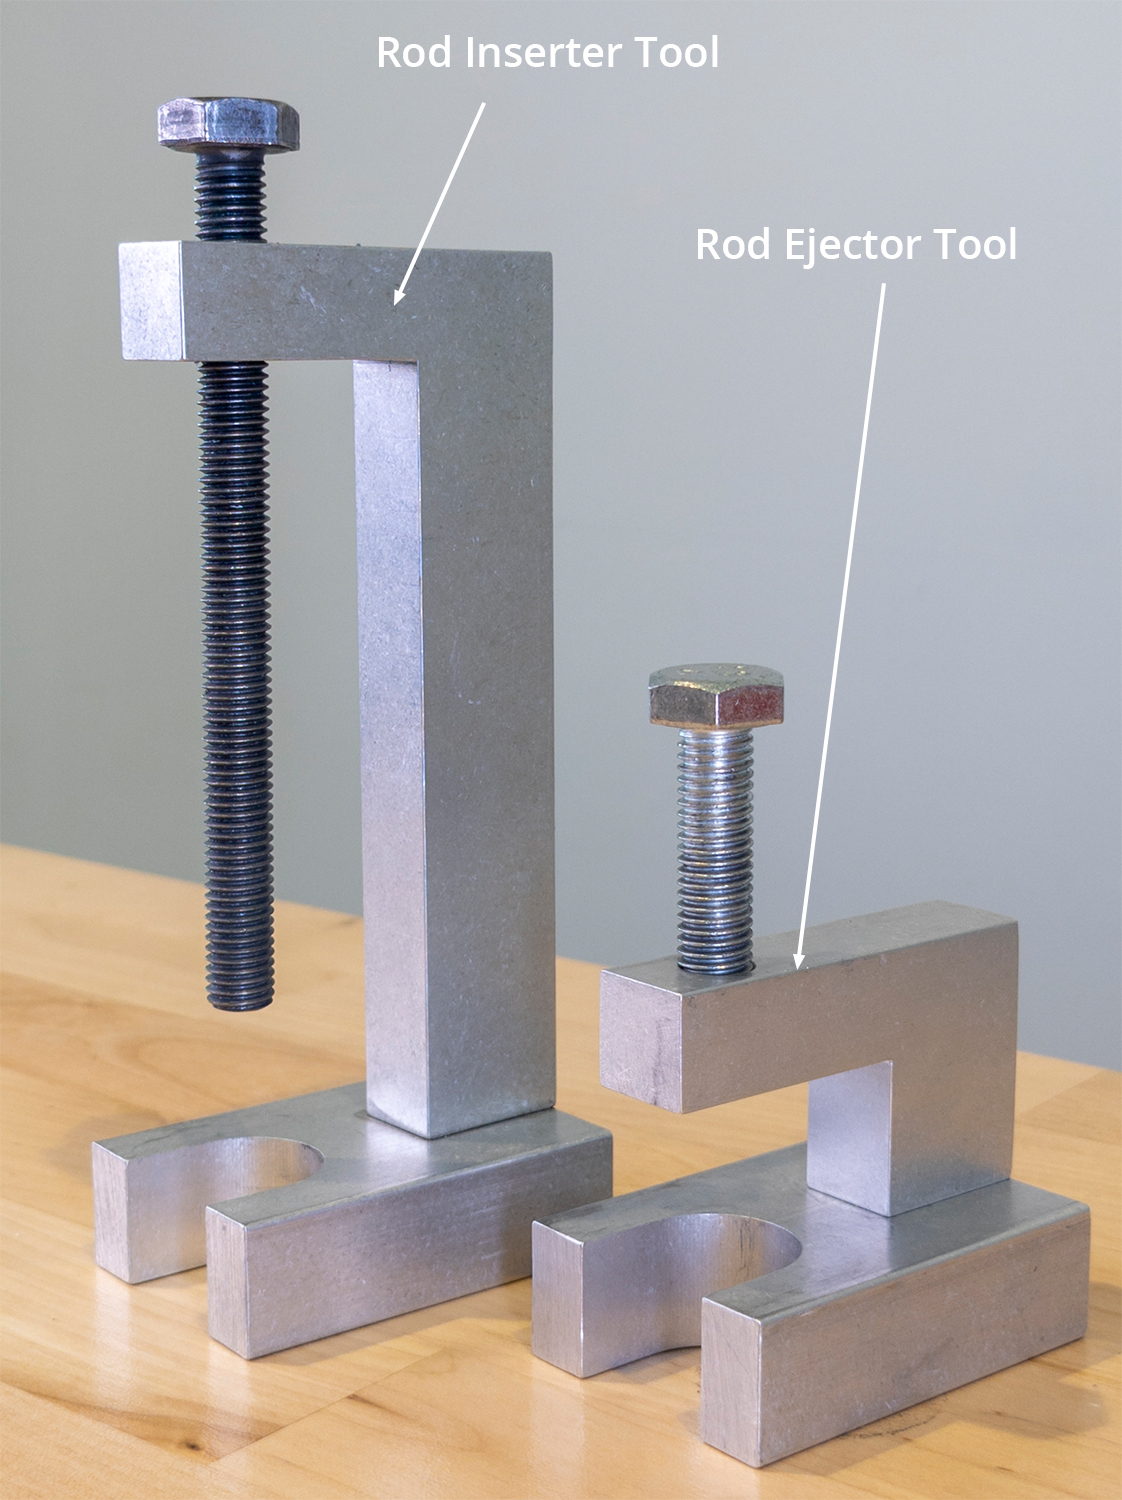 Rod-Ejector-vs-Inserter-Tool.jpg